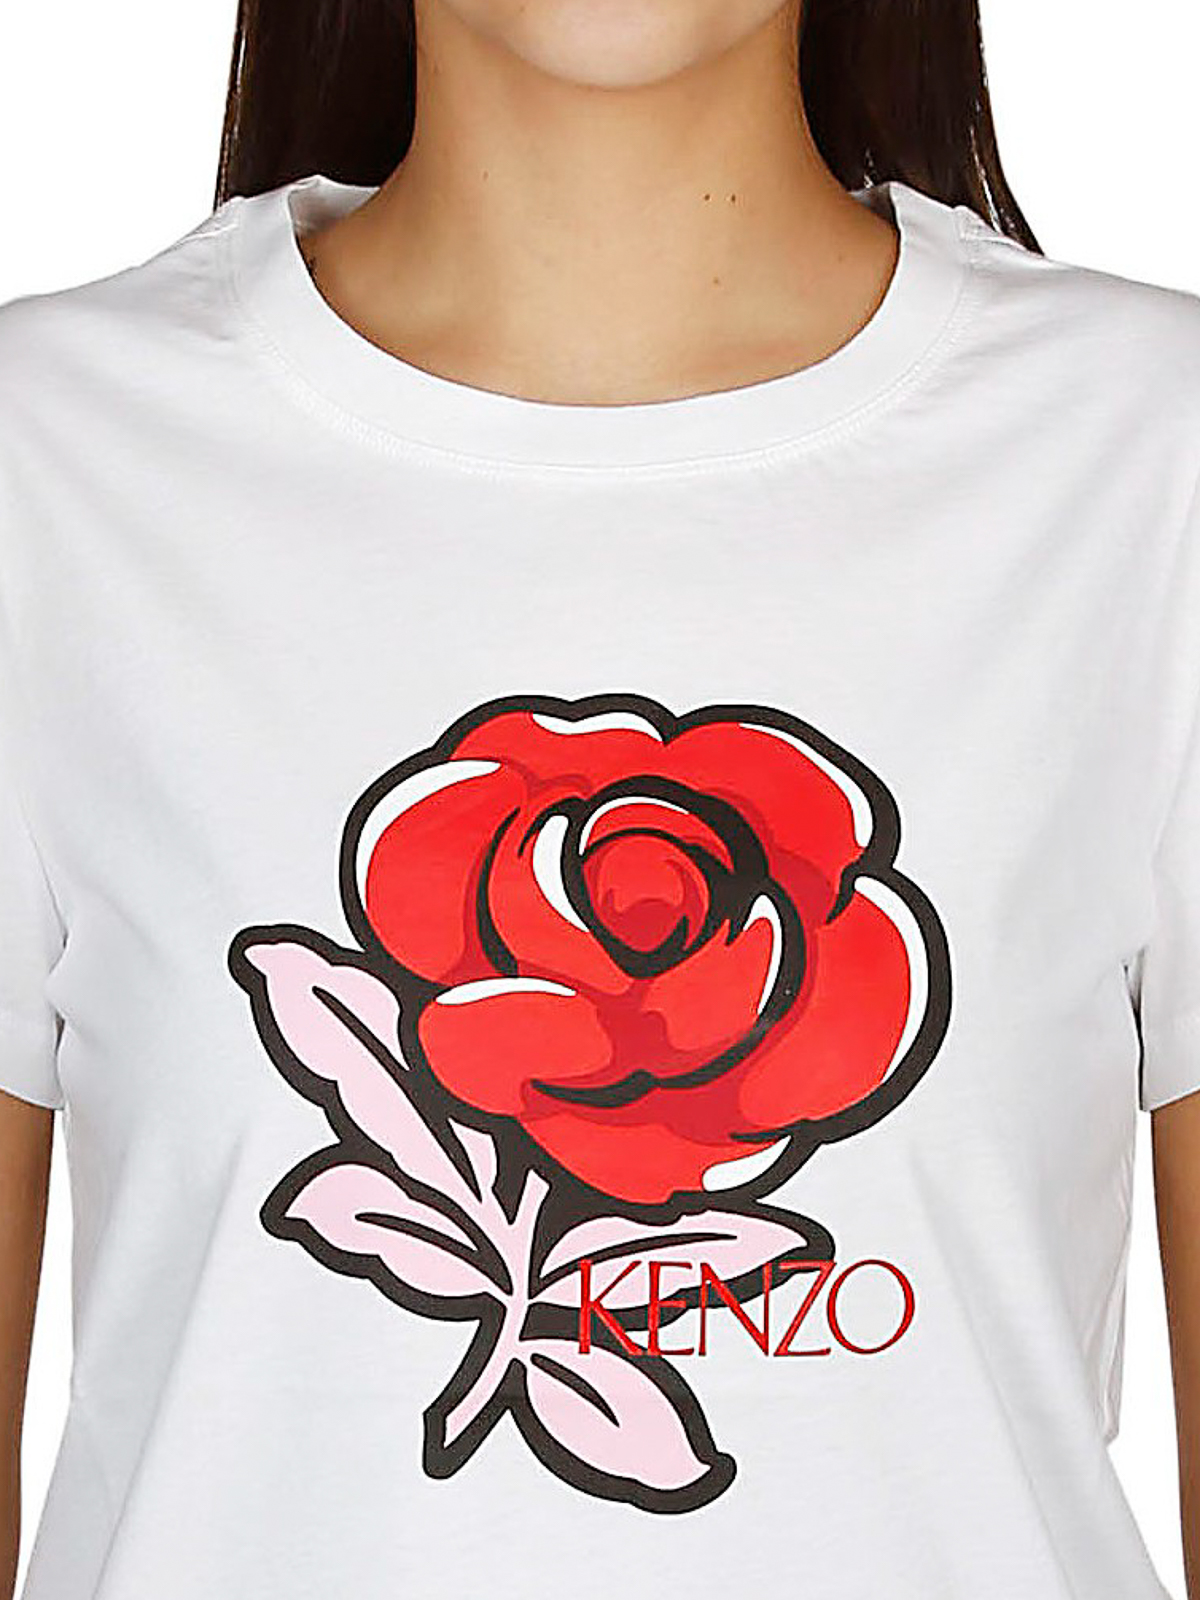 kenzo roses